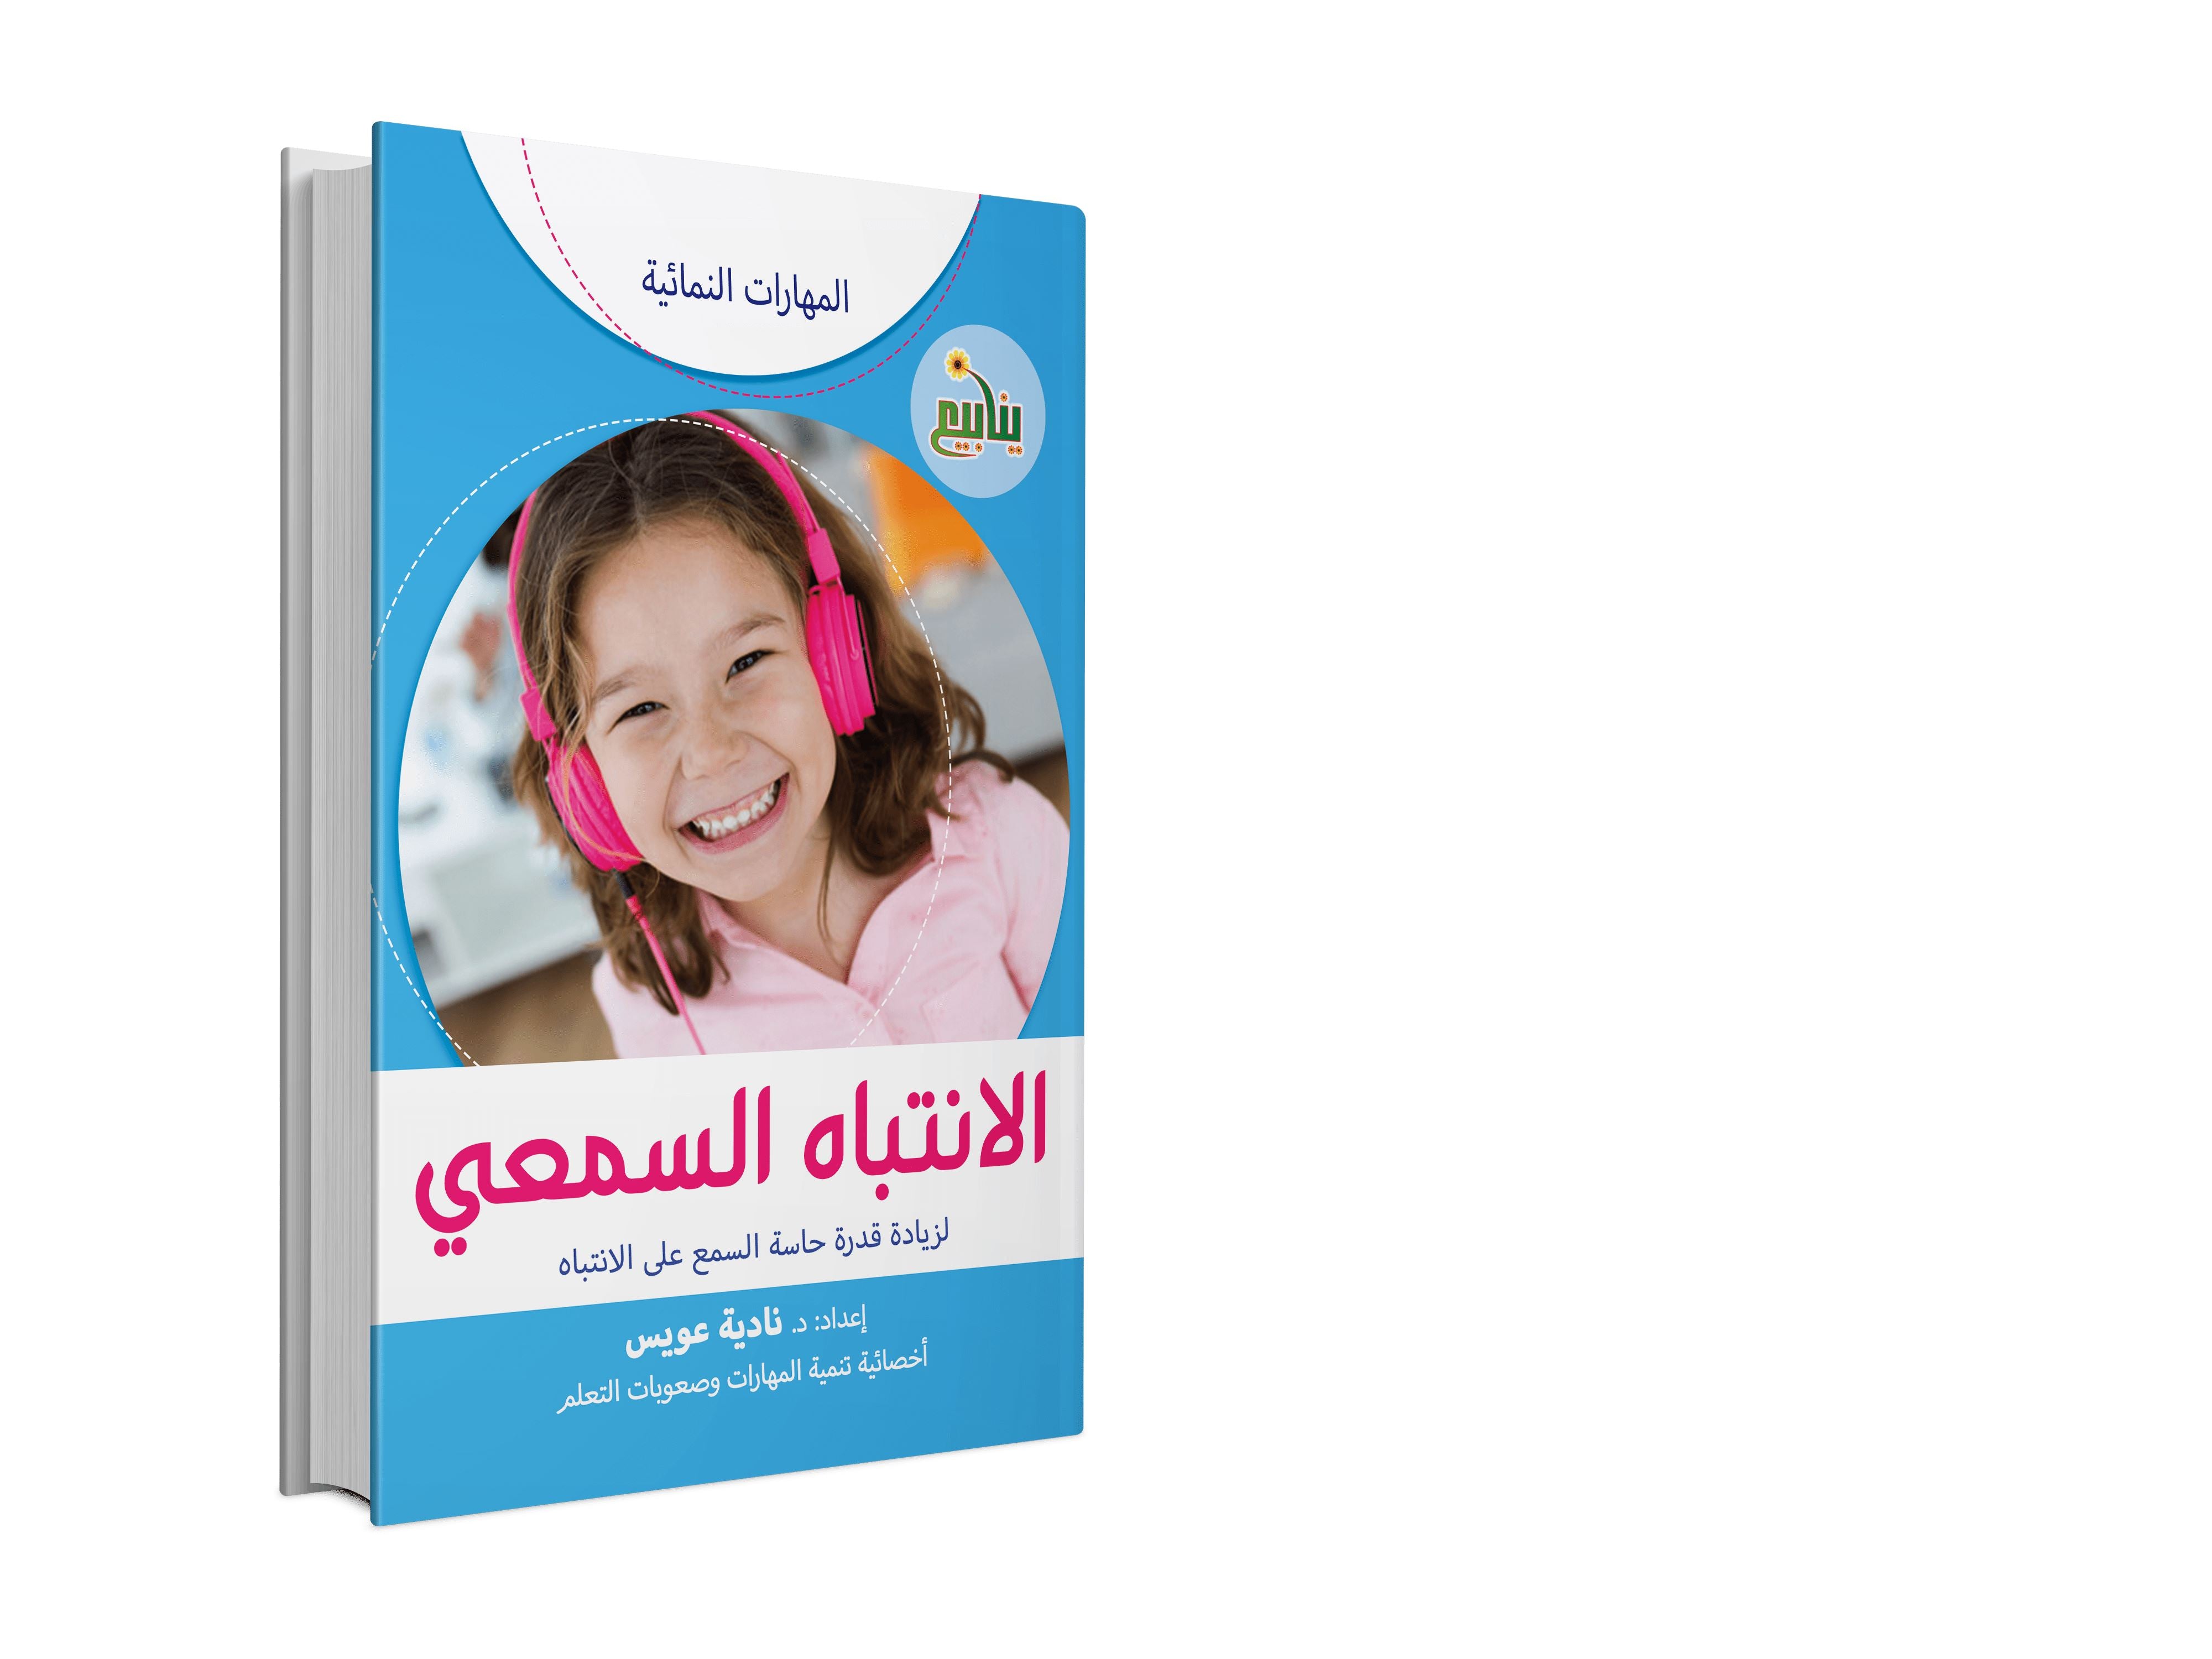 سلسلة المهارات النمائية كتب أطفال نادية عويس